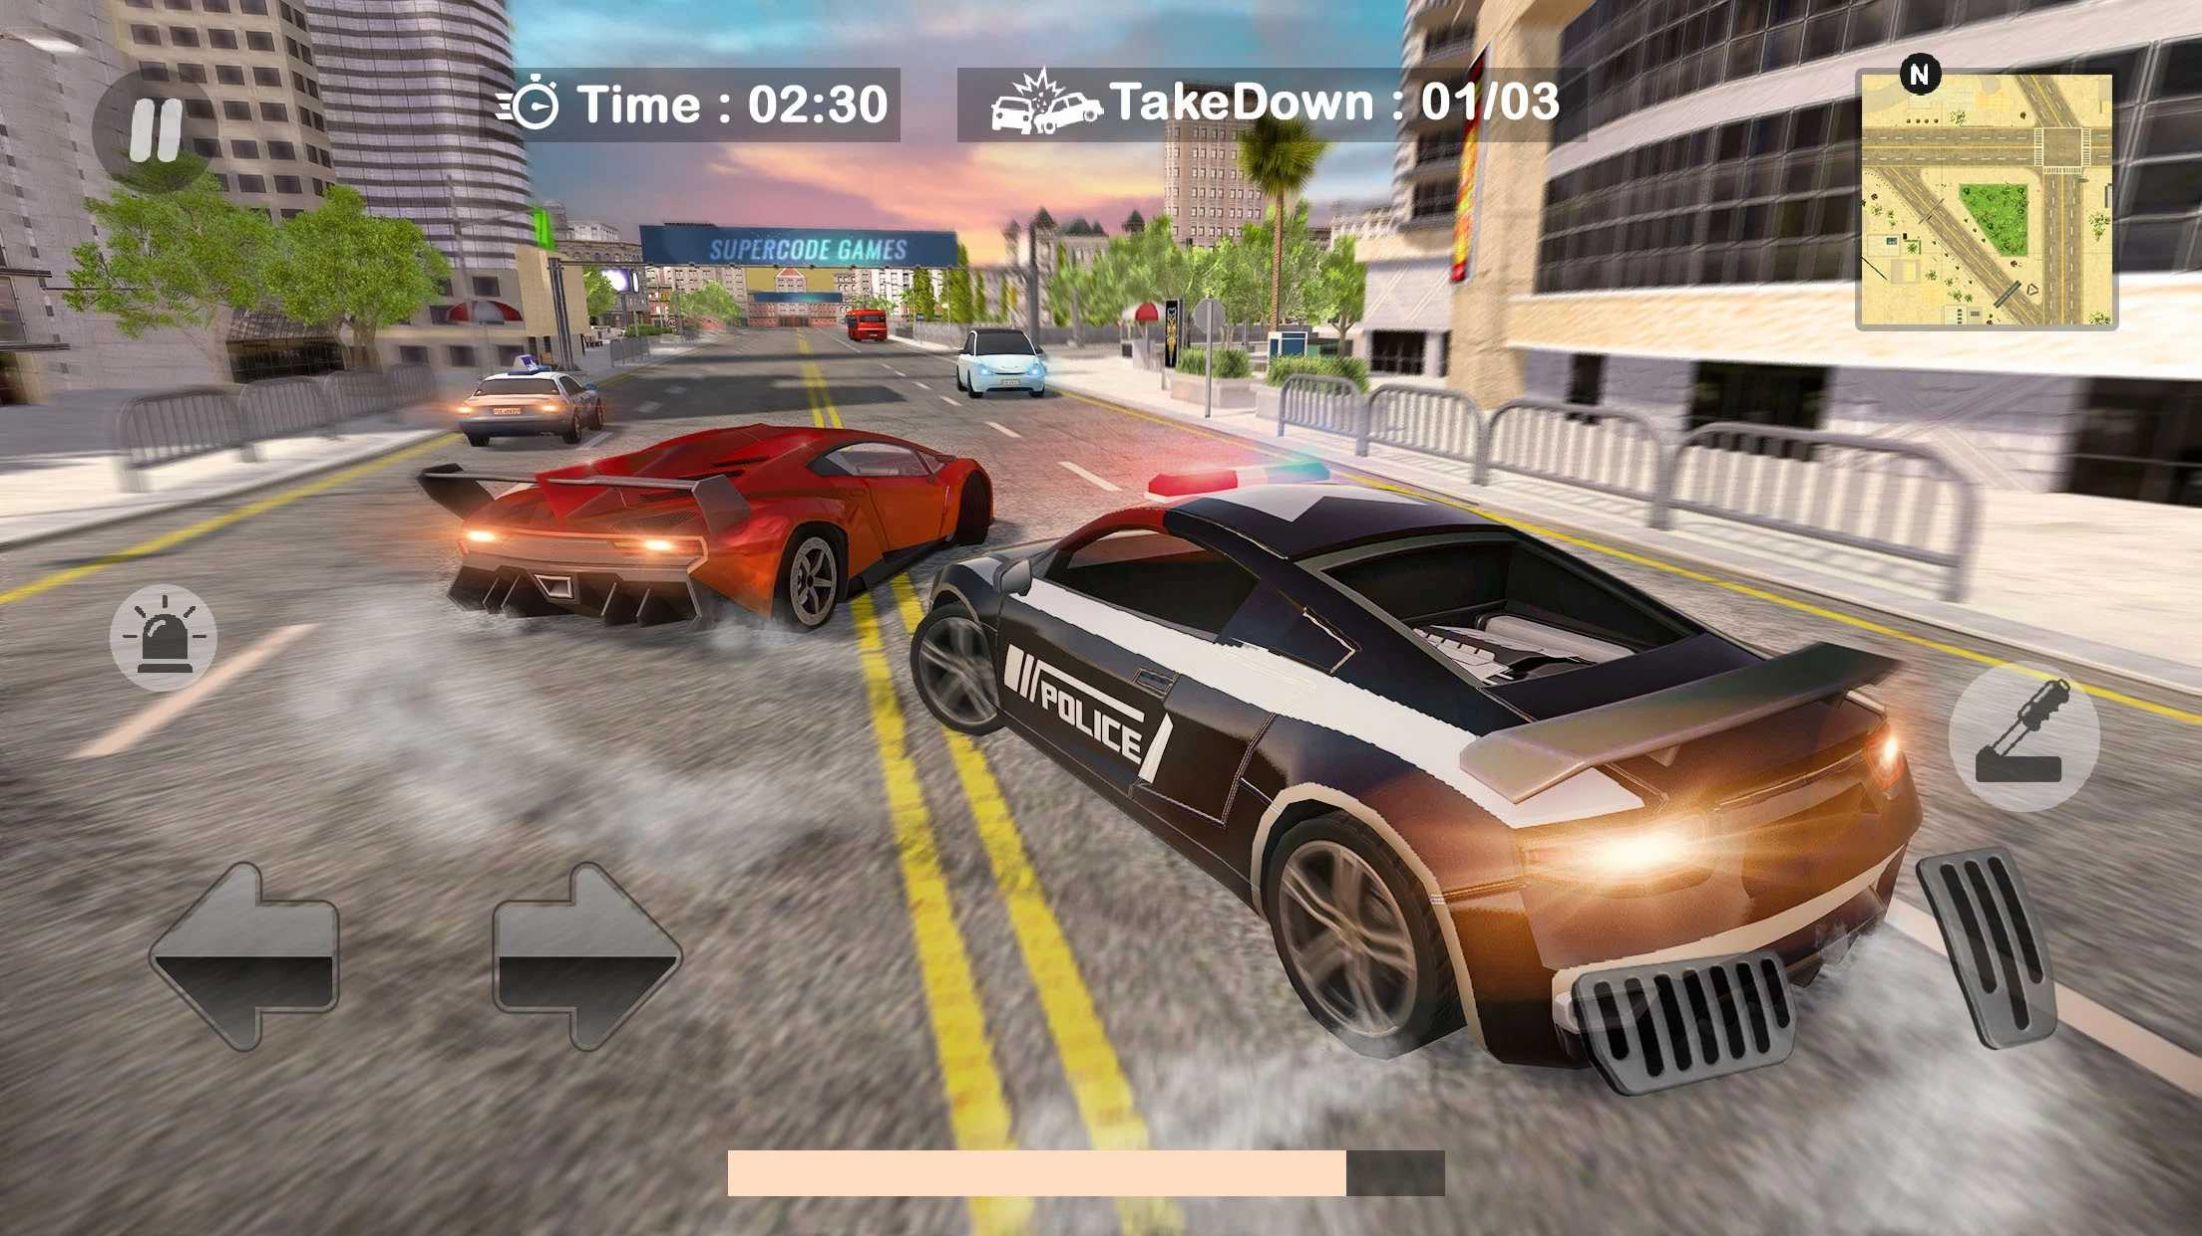 警车追逐粉碎警察游戏下载,警车追逐粉碎警察游戏官方版 v1.1